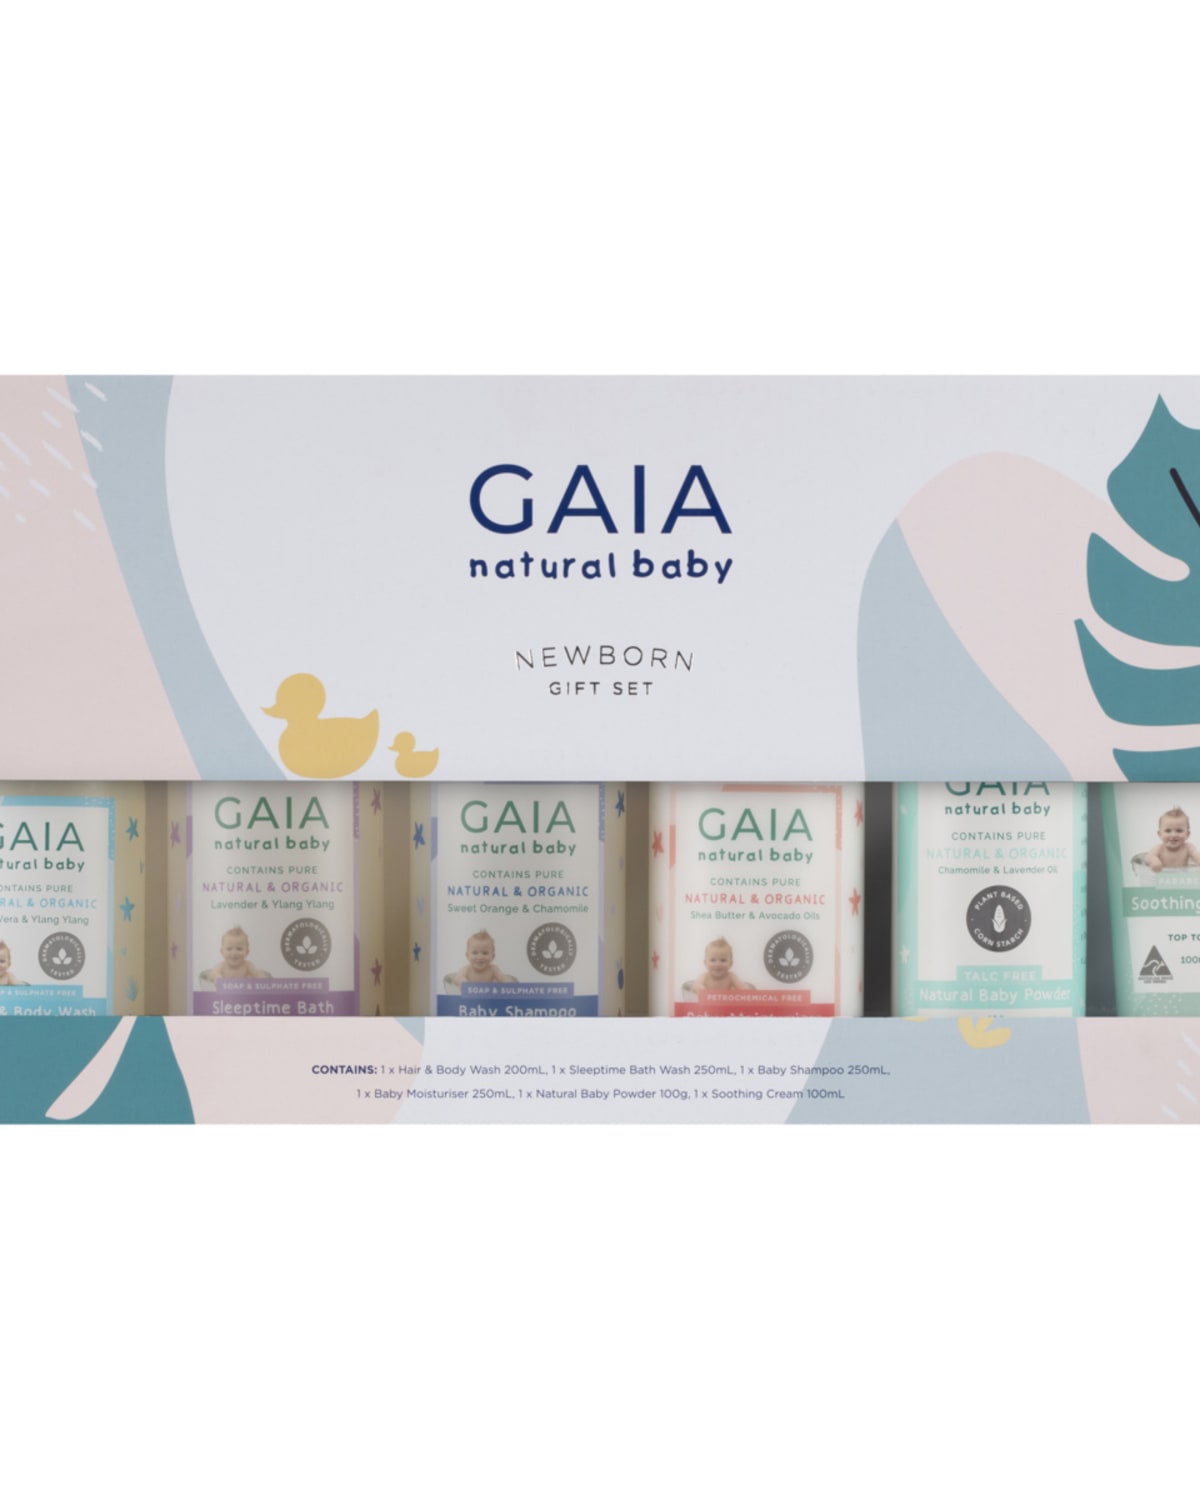 GAIA Natural Baby Newborn Gift Set - Kmart